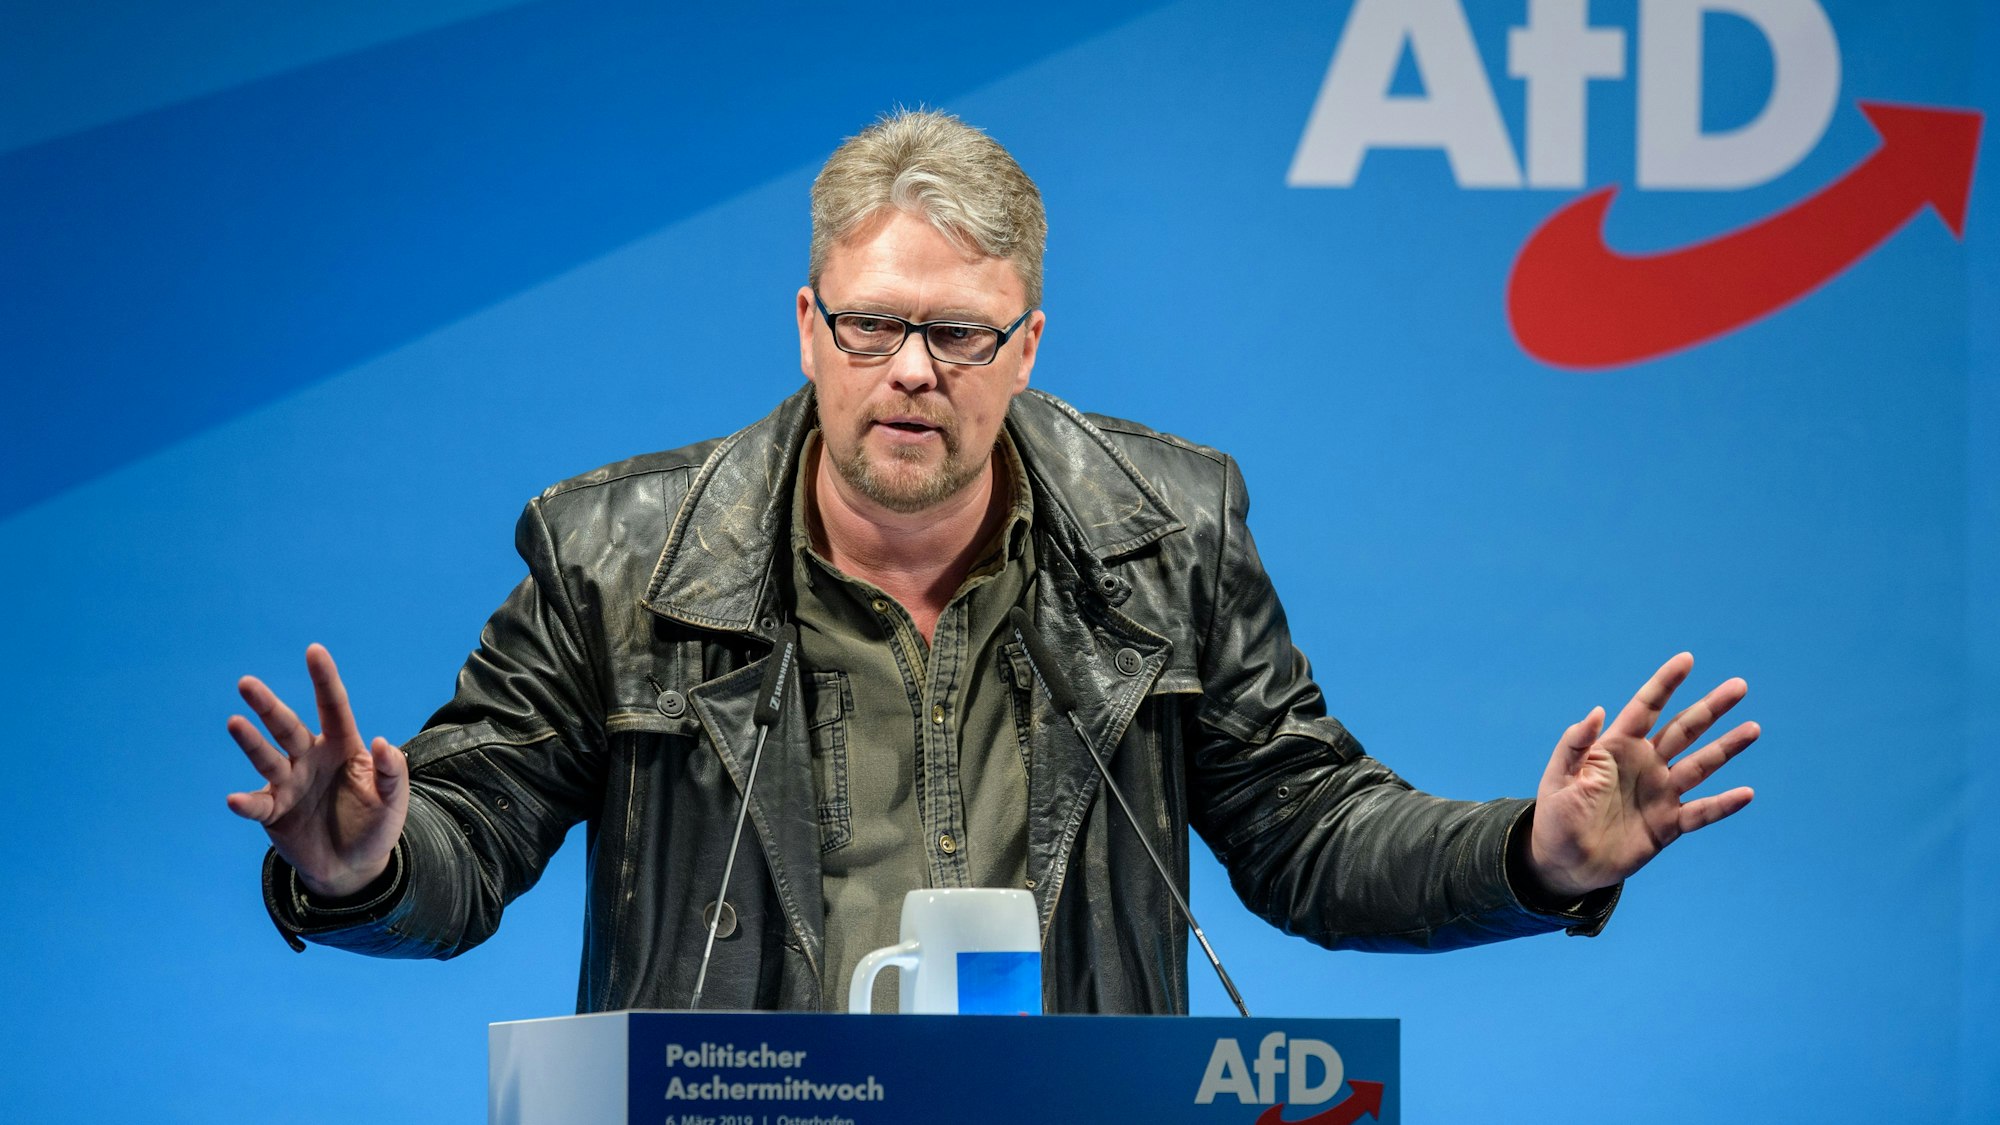 Guido Reil, für die AfD im Europaparlament, sieht sich Vorwürfen aus der eigenen Partei gegenüber. Er soll Mitarbeiterinnen sexuell belästigt haben, schrieb eine Parteikollegin in internen Chats. Nun wehr sich das ehemalige SPD-Mitglied. (Archivbild)